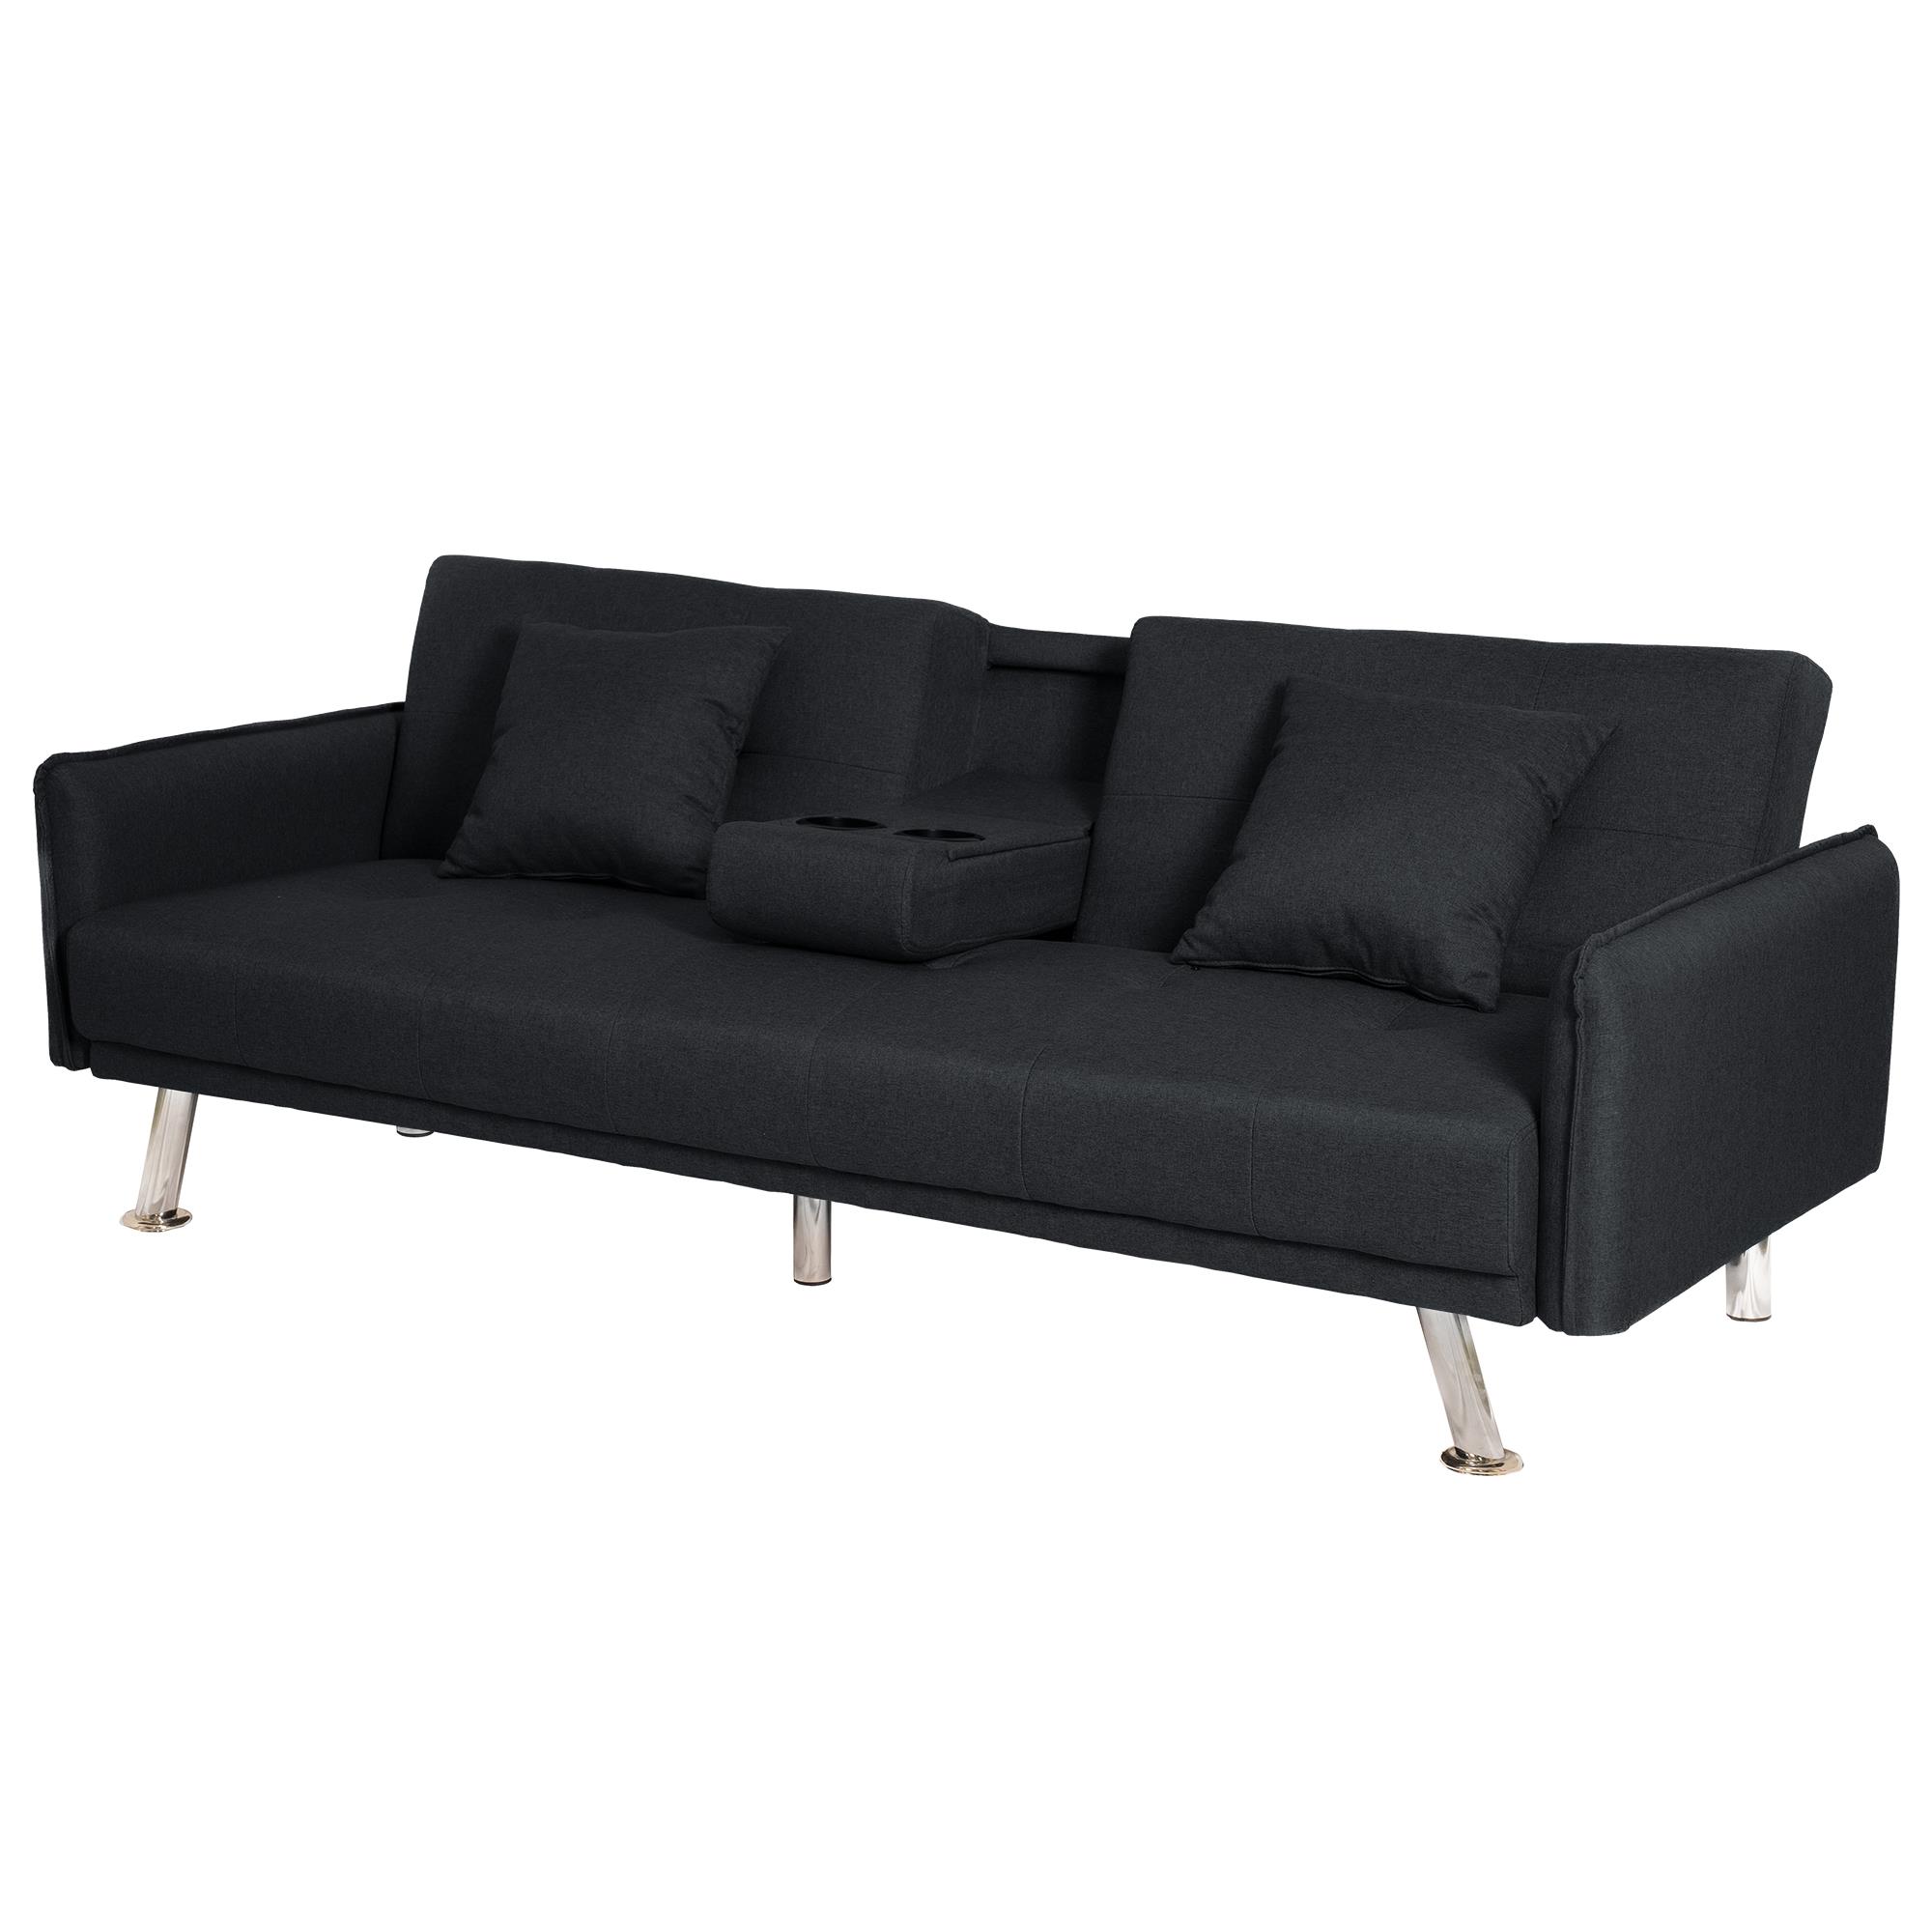 ספה תלת מושבית נפתחת למיטה תלת מושבית דגם פריז צבע שחור